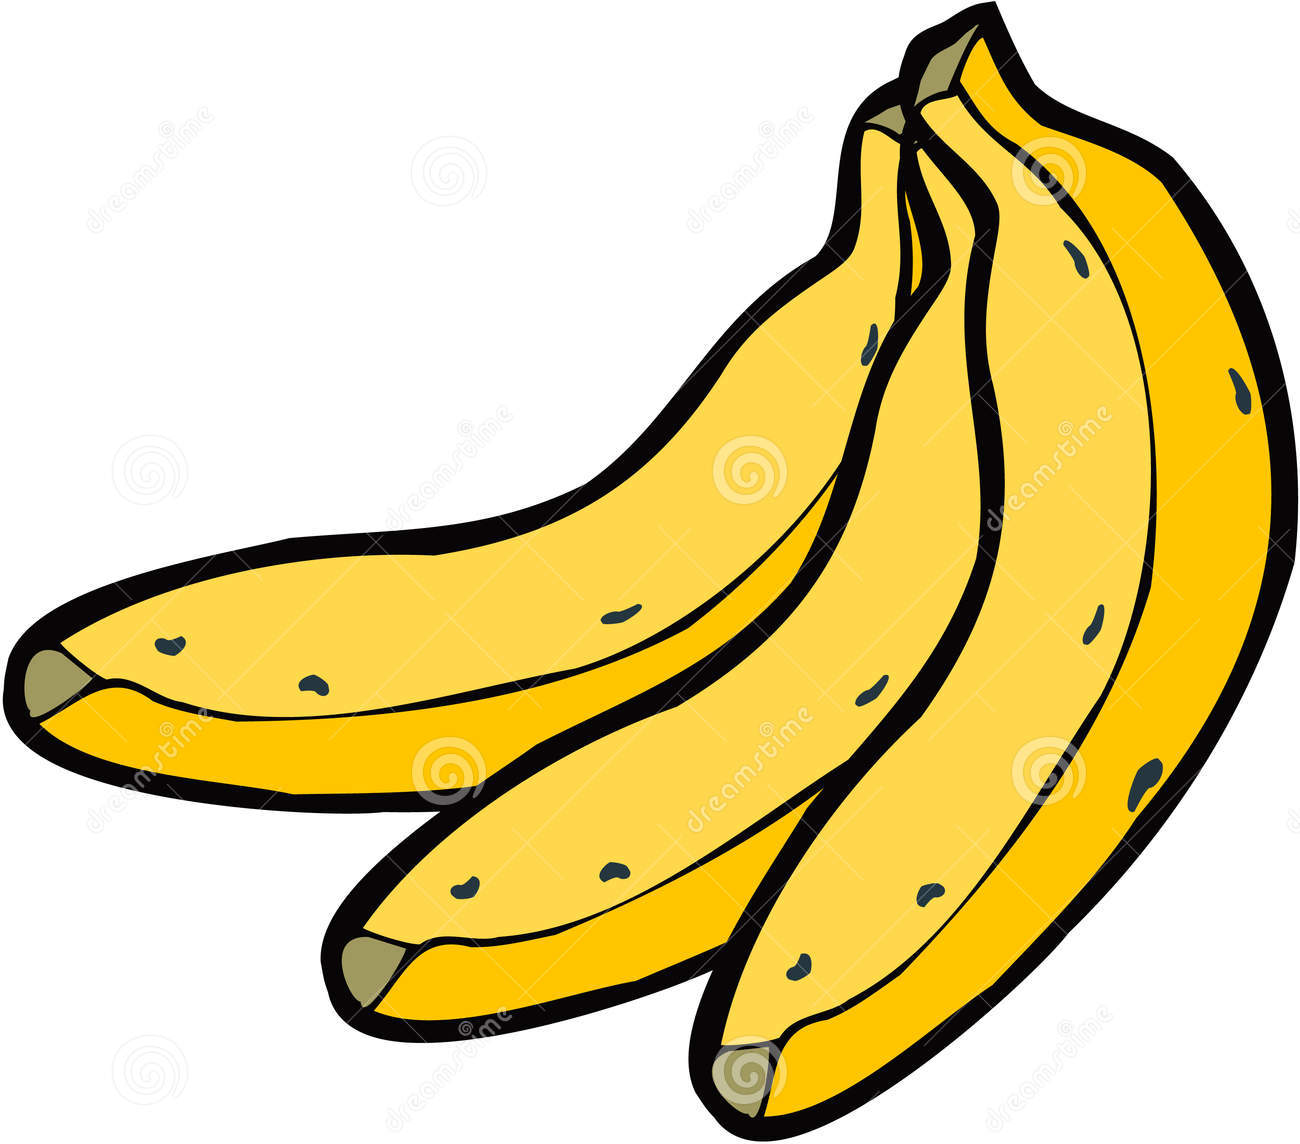 banana clipart black and whit - Bananas Clipart